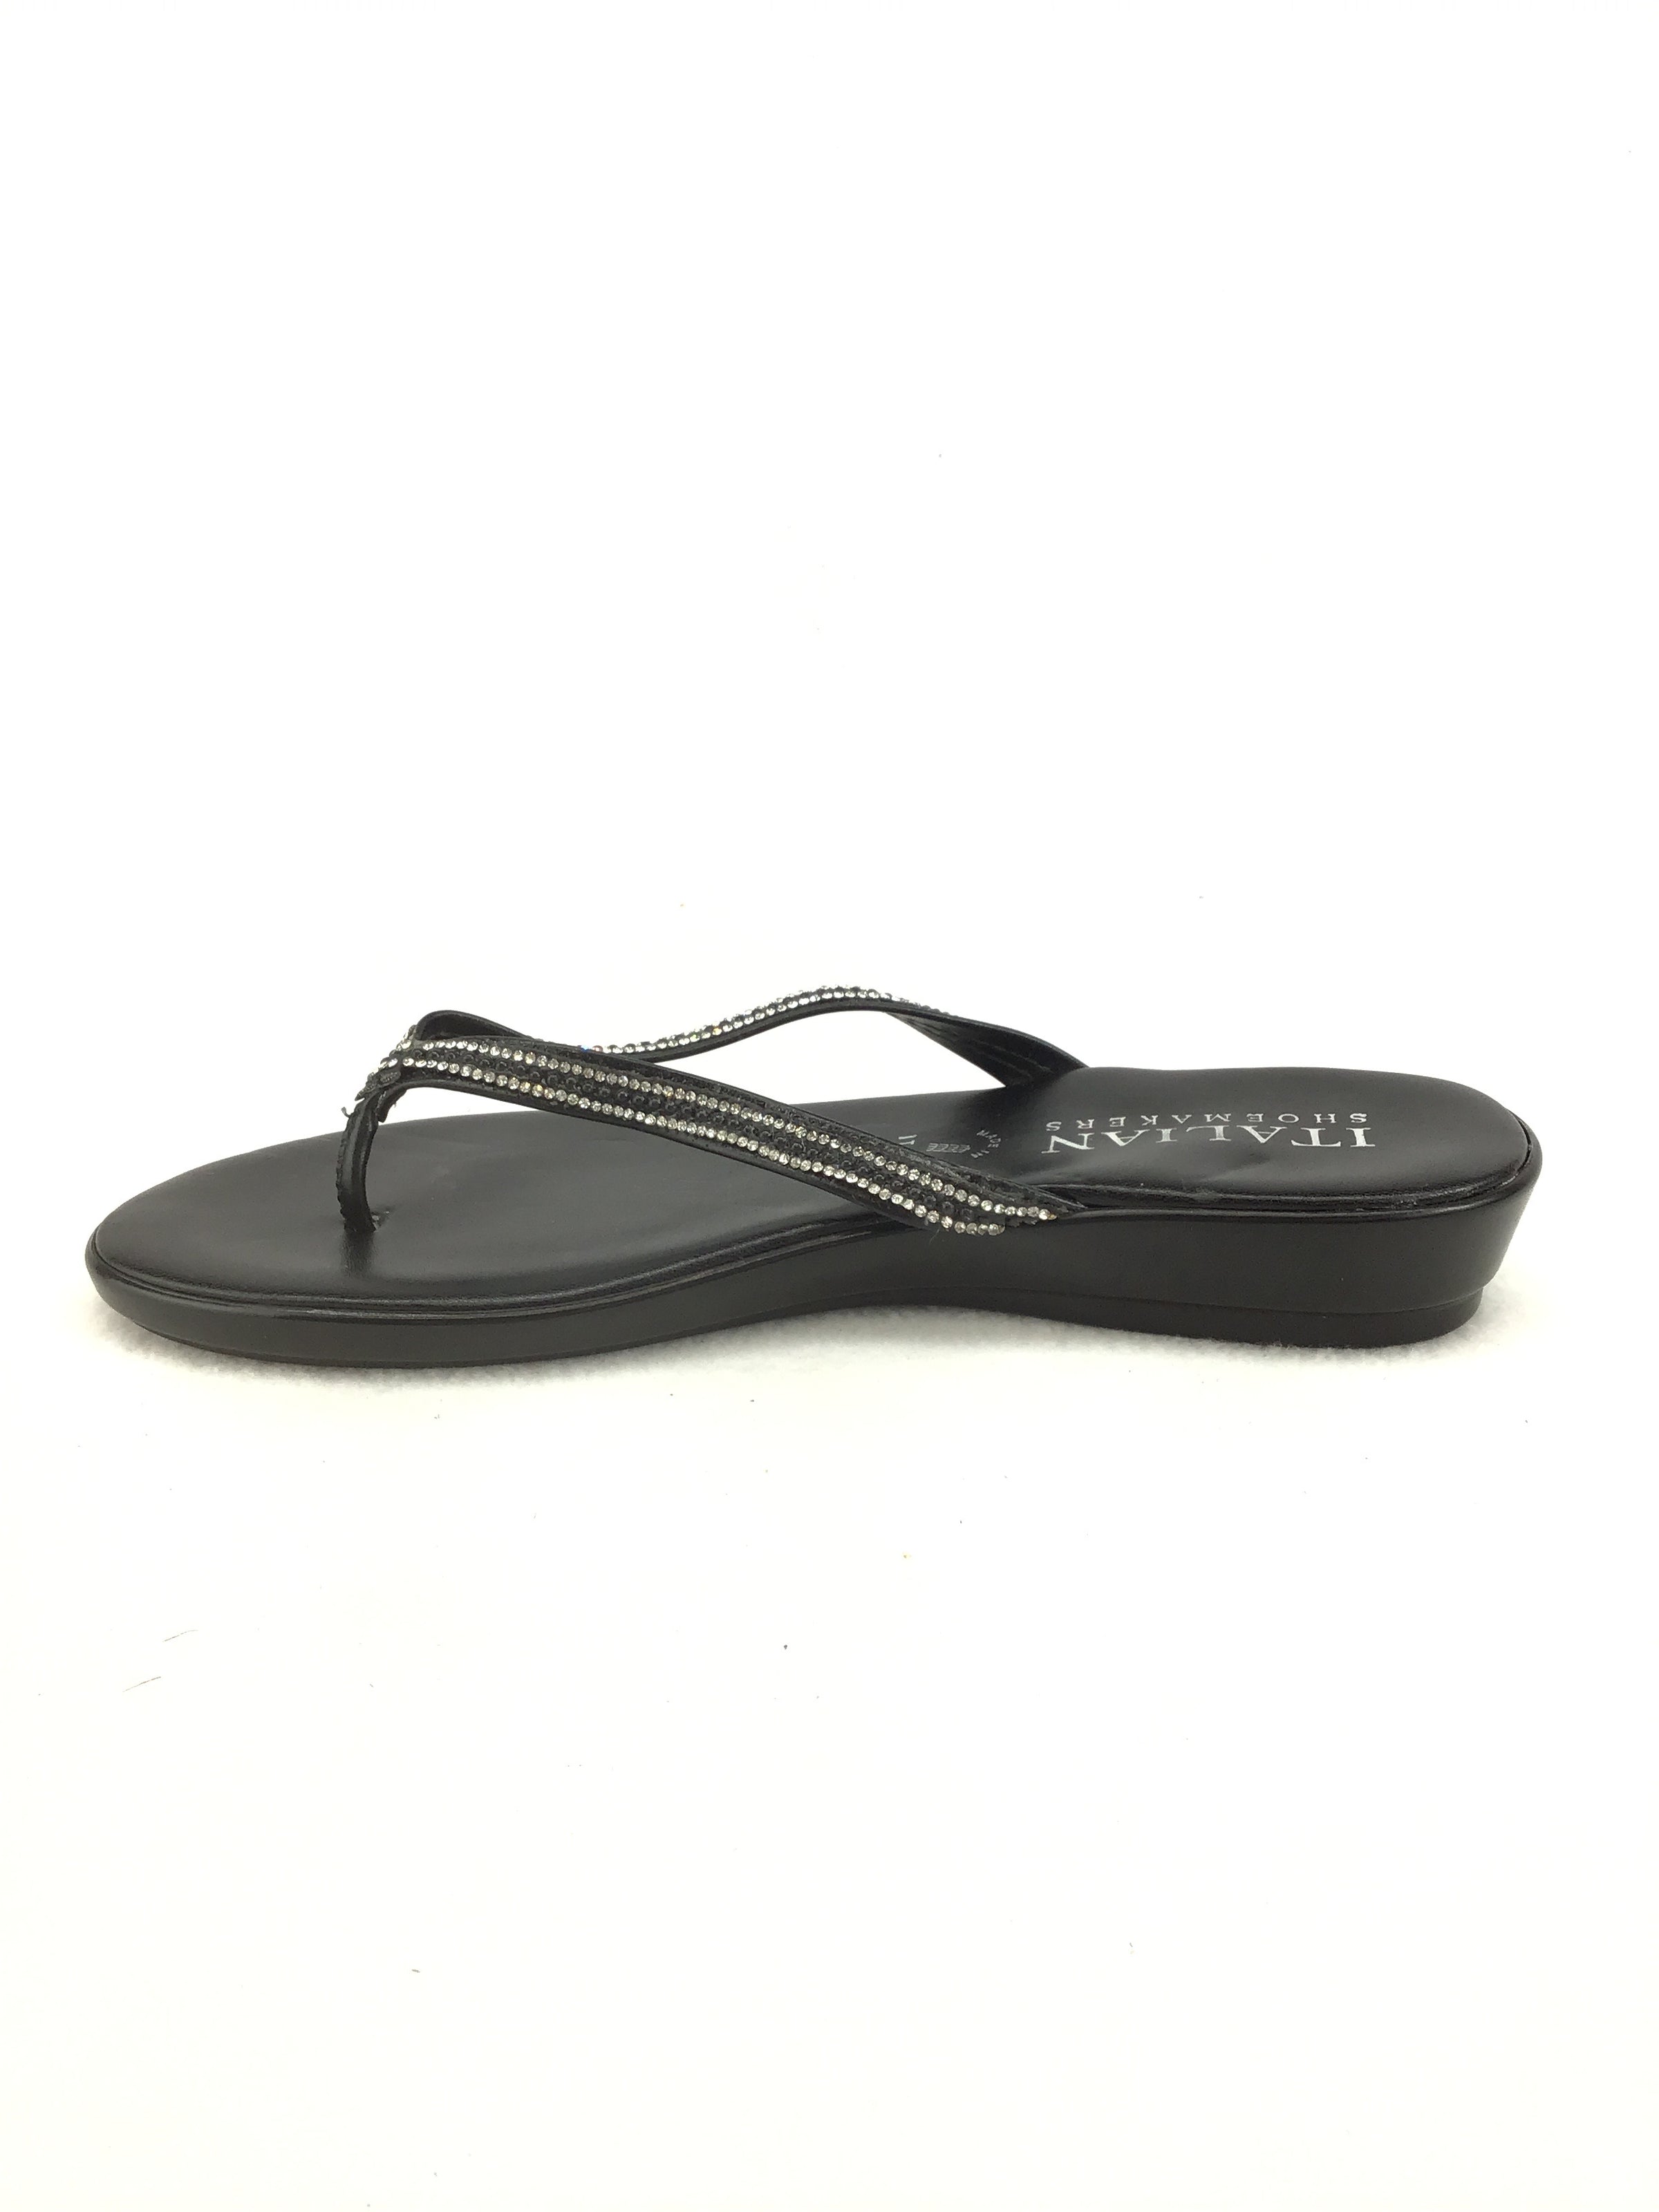 Italian Shoemakers Flip Flops Size 8.5